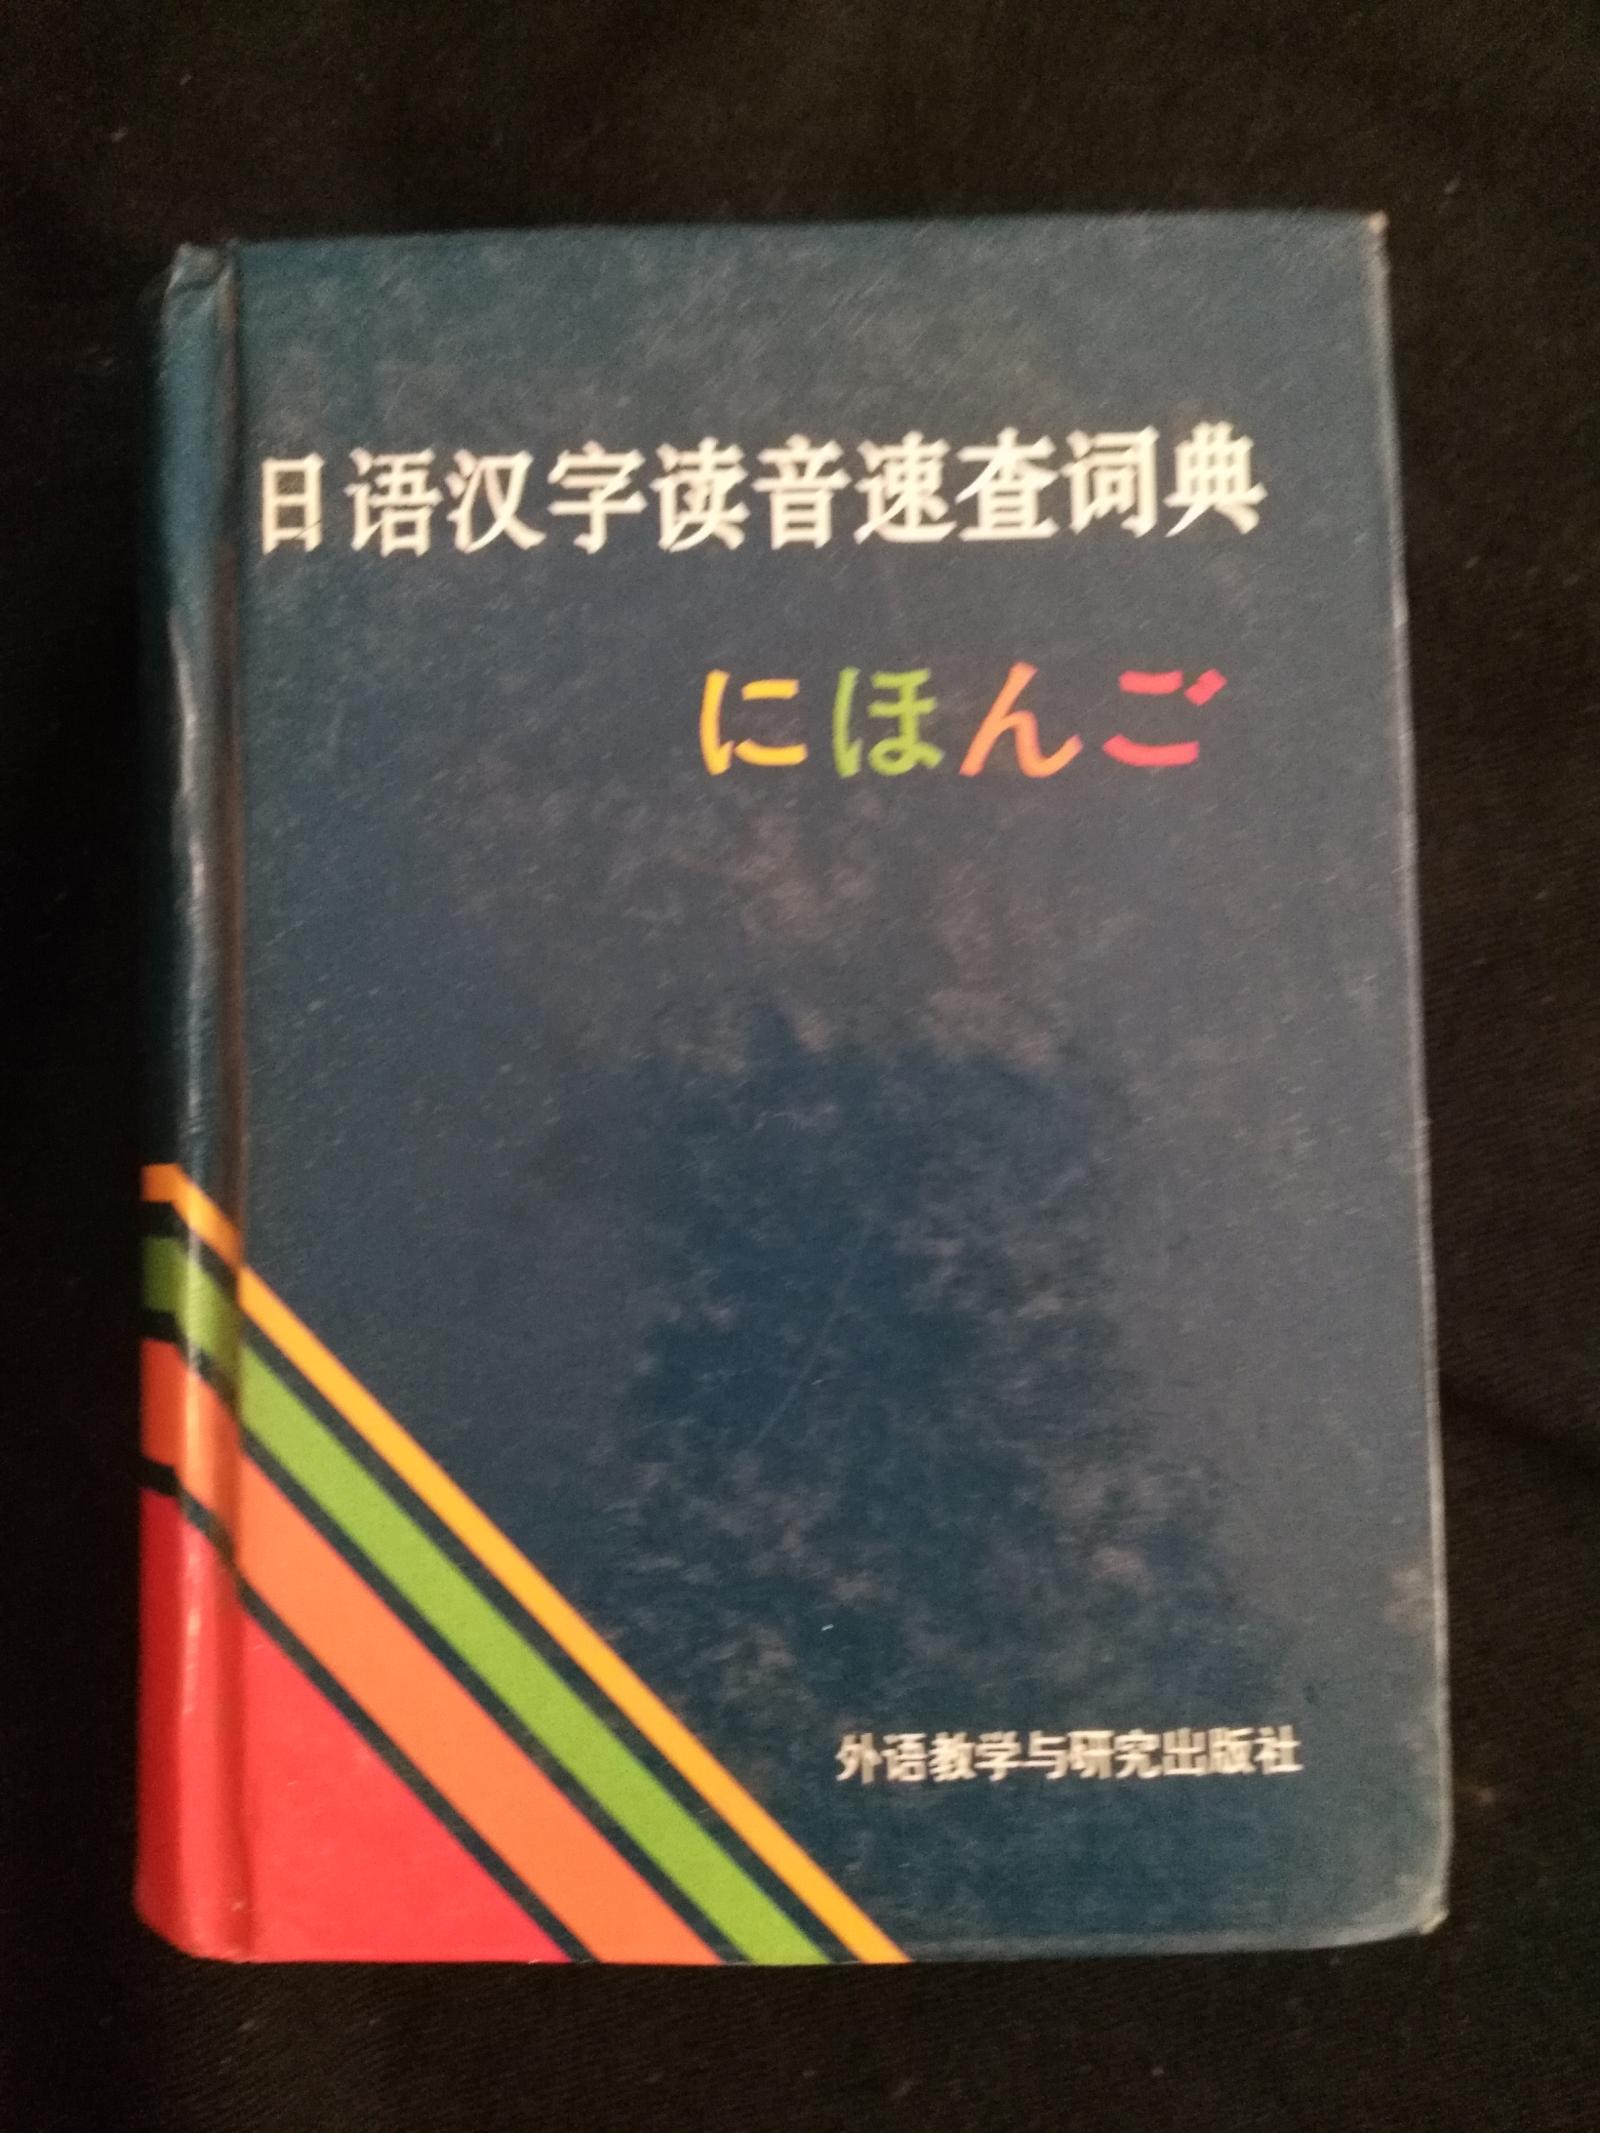 日语汉字读音速查词典